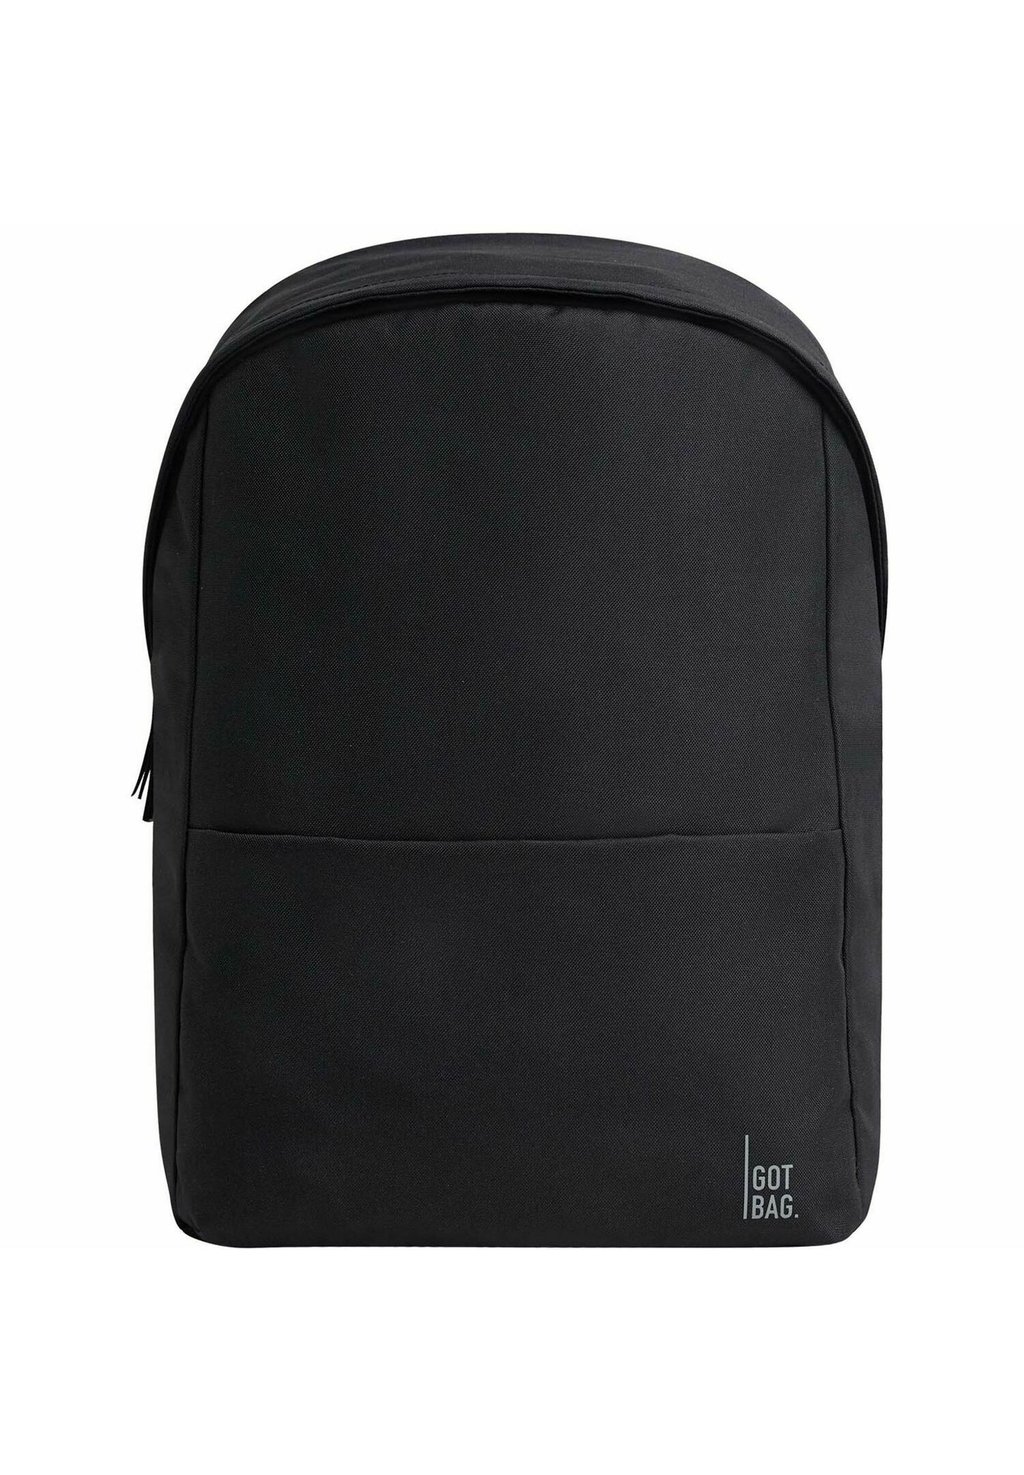 Рюкзак EASY PACK GOT BAG, цвет black